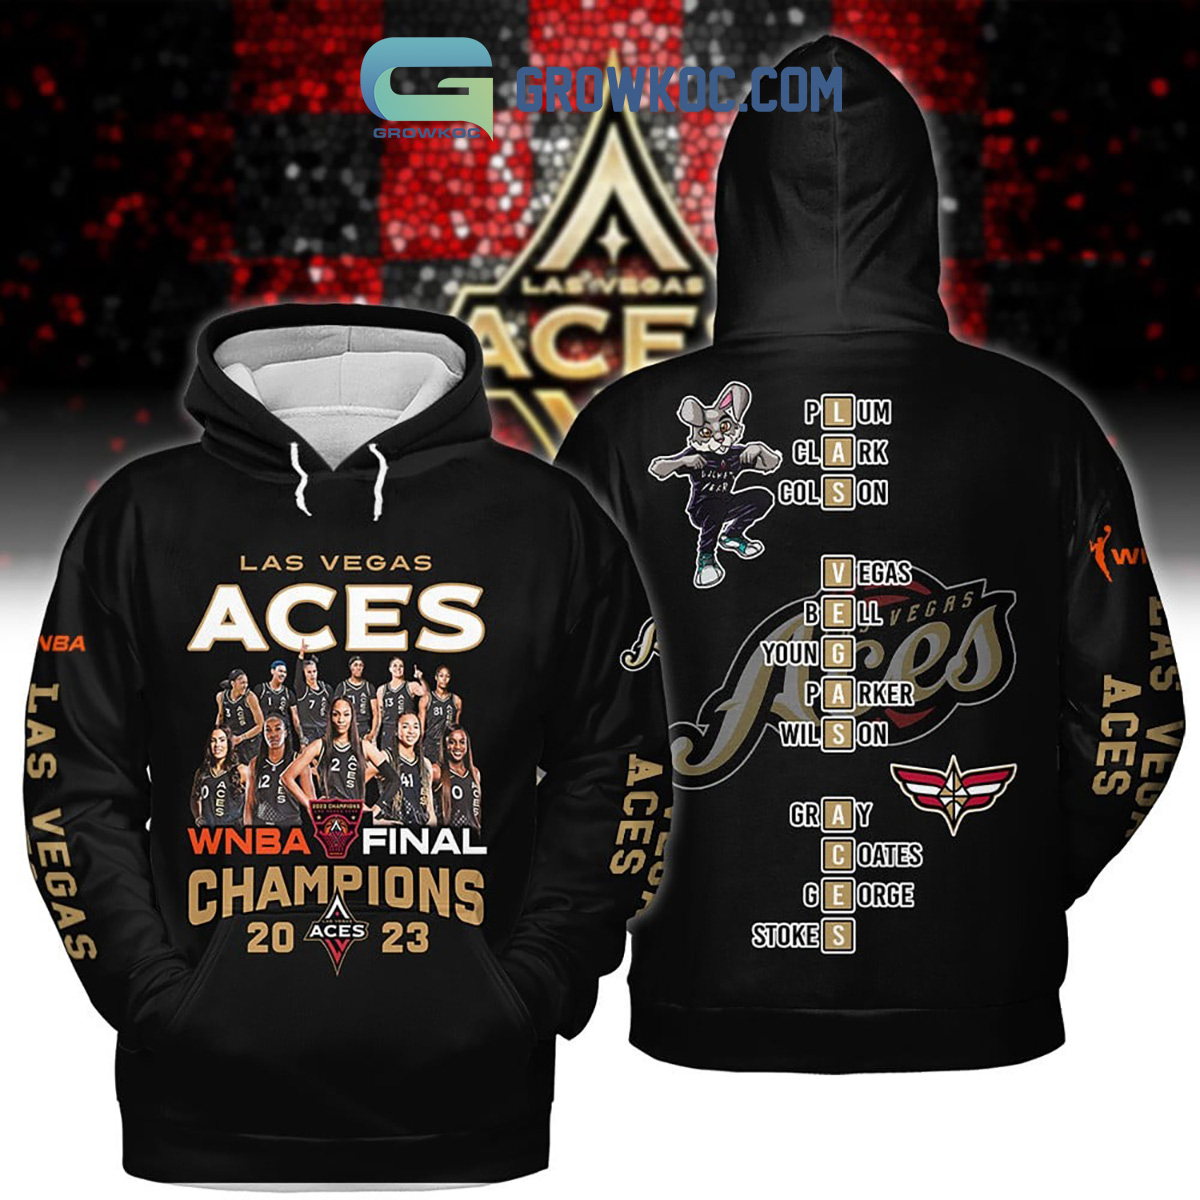 Las Vegas Aces Champions T-Shirt